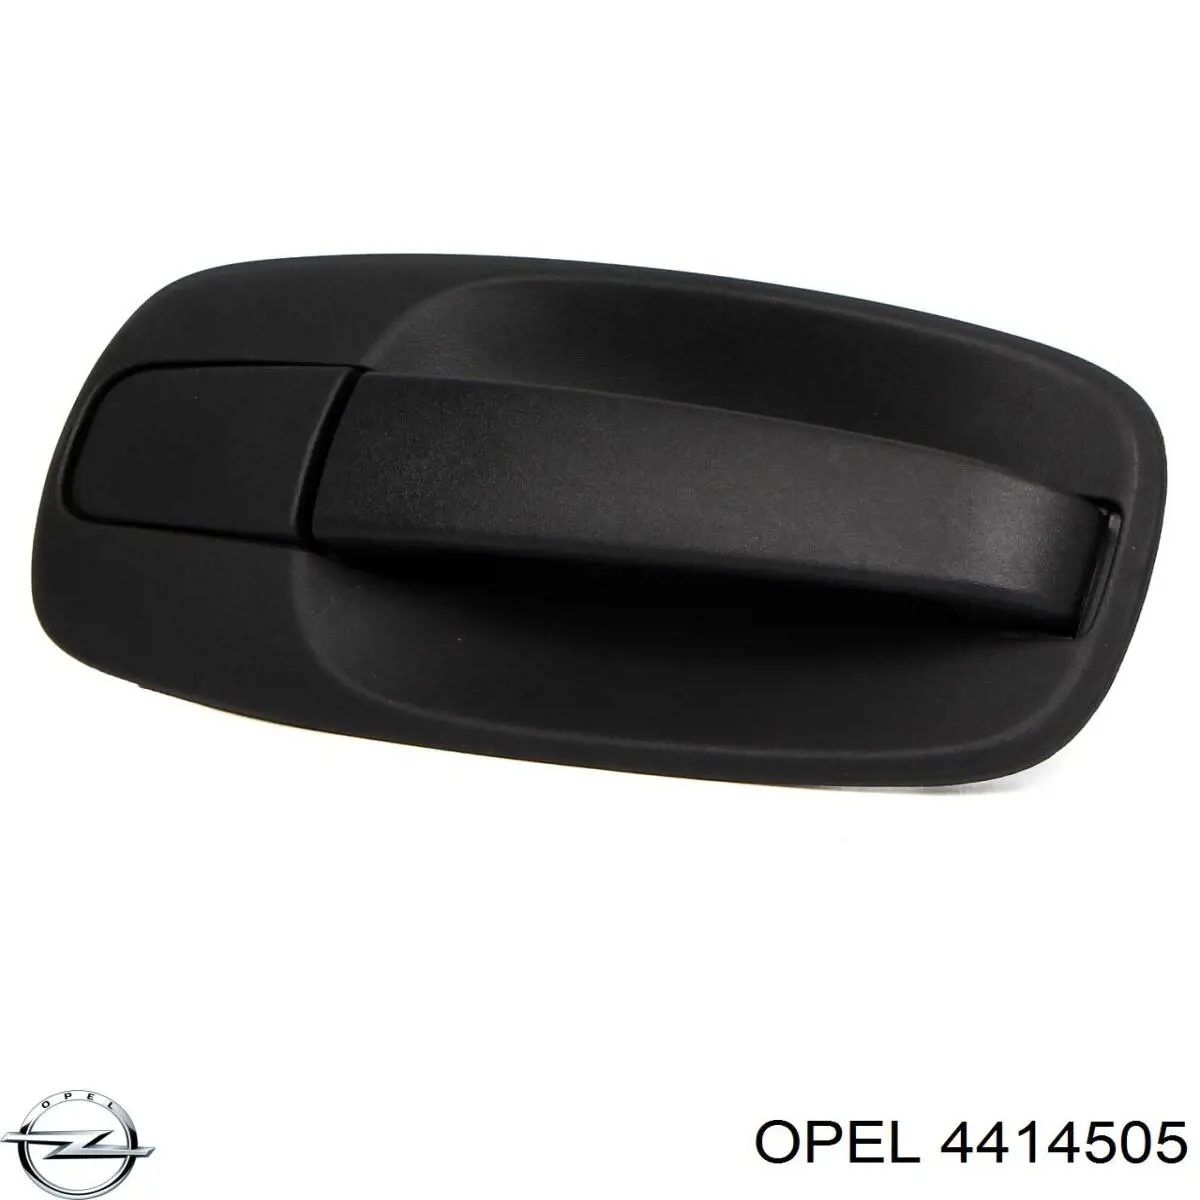 4414505 Opel 